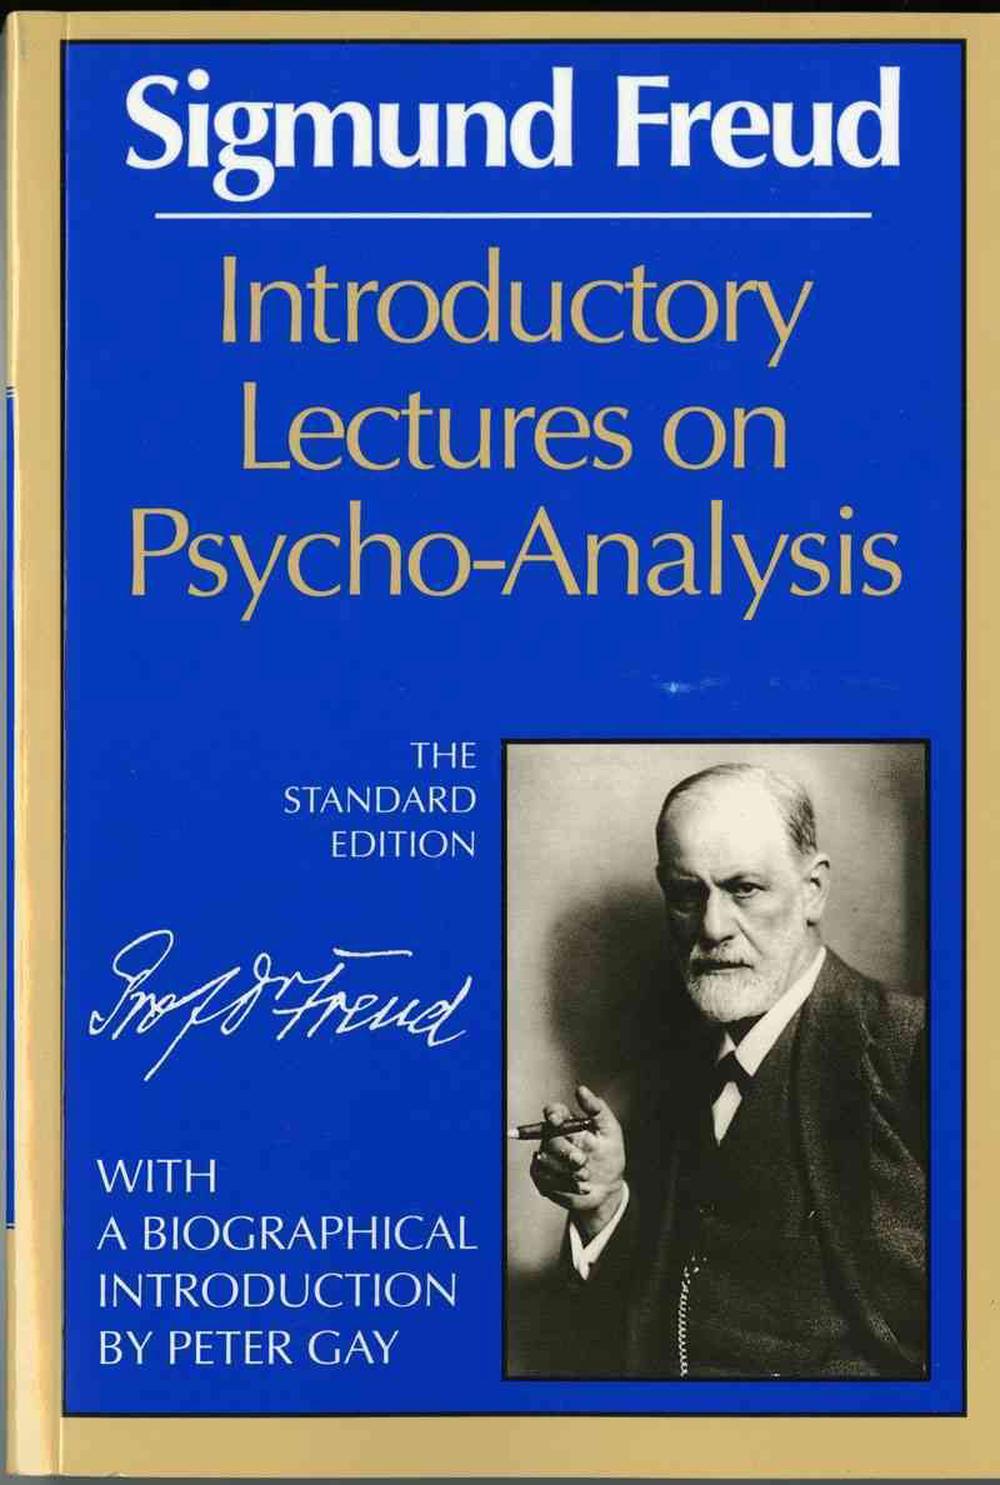 sigmund freud psychoanalysis essay